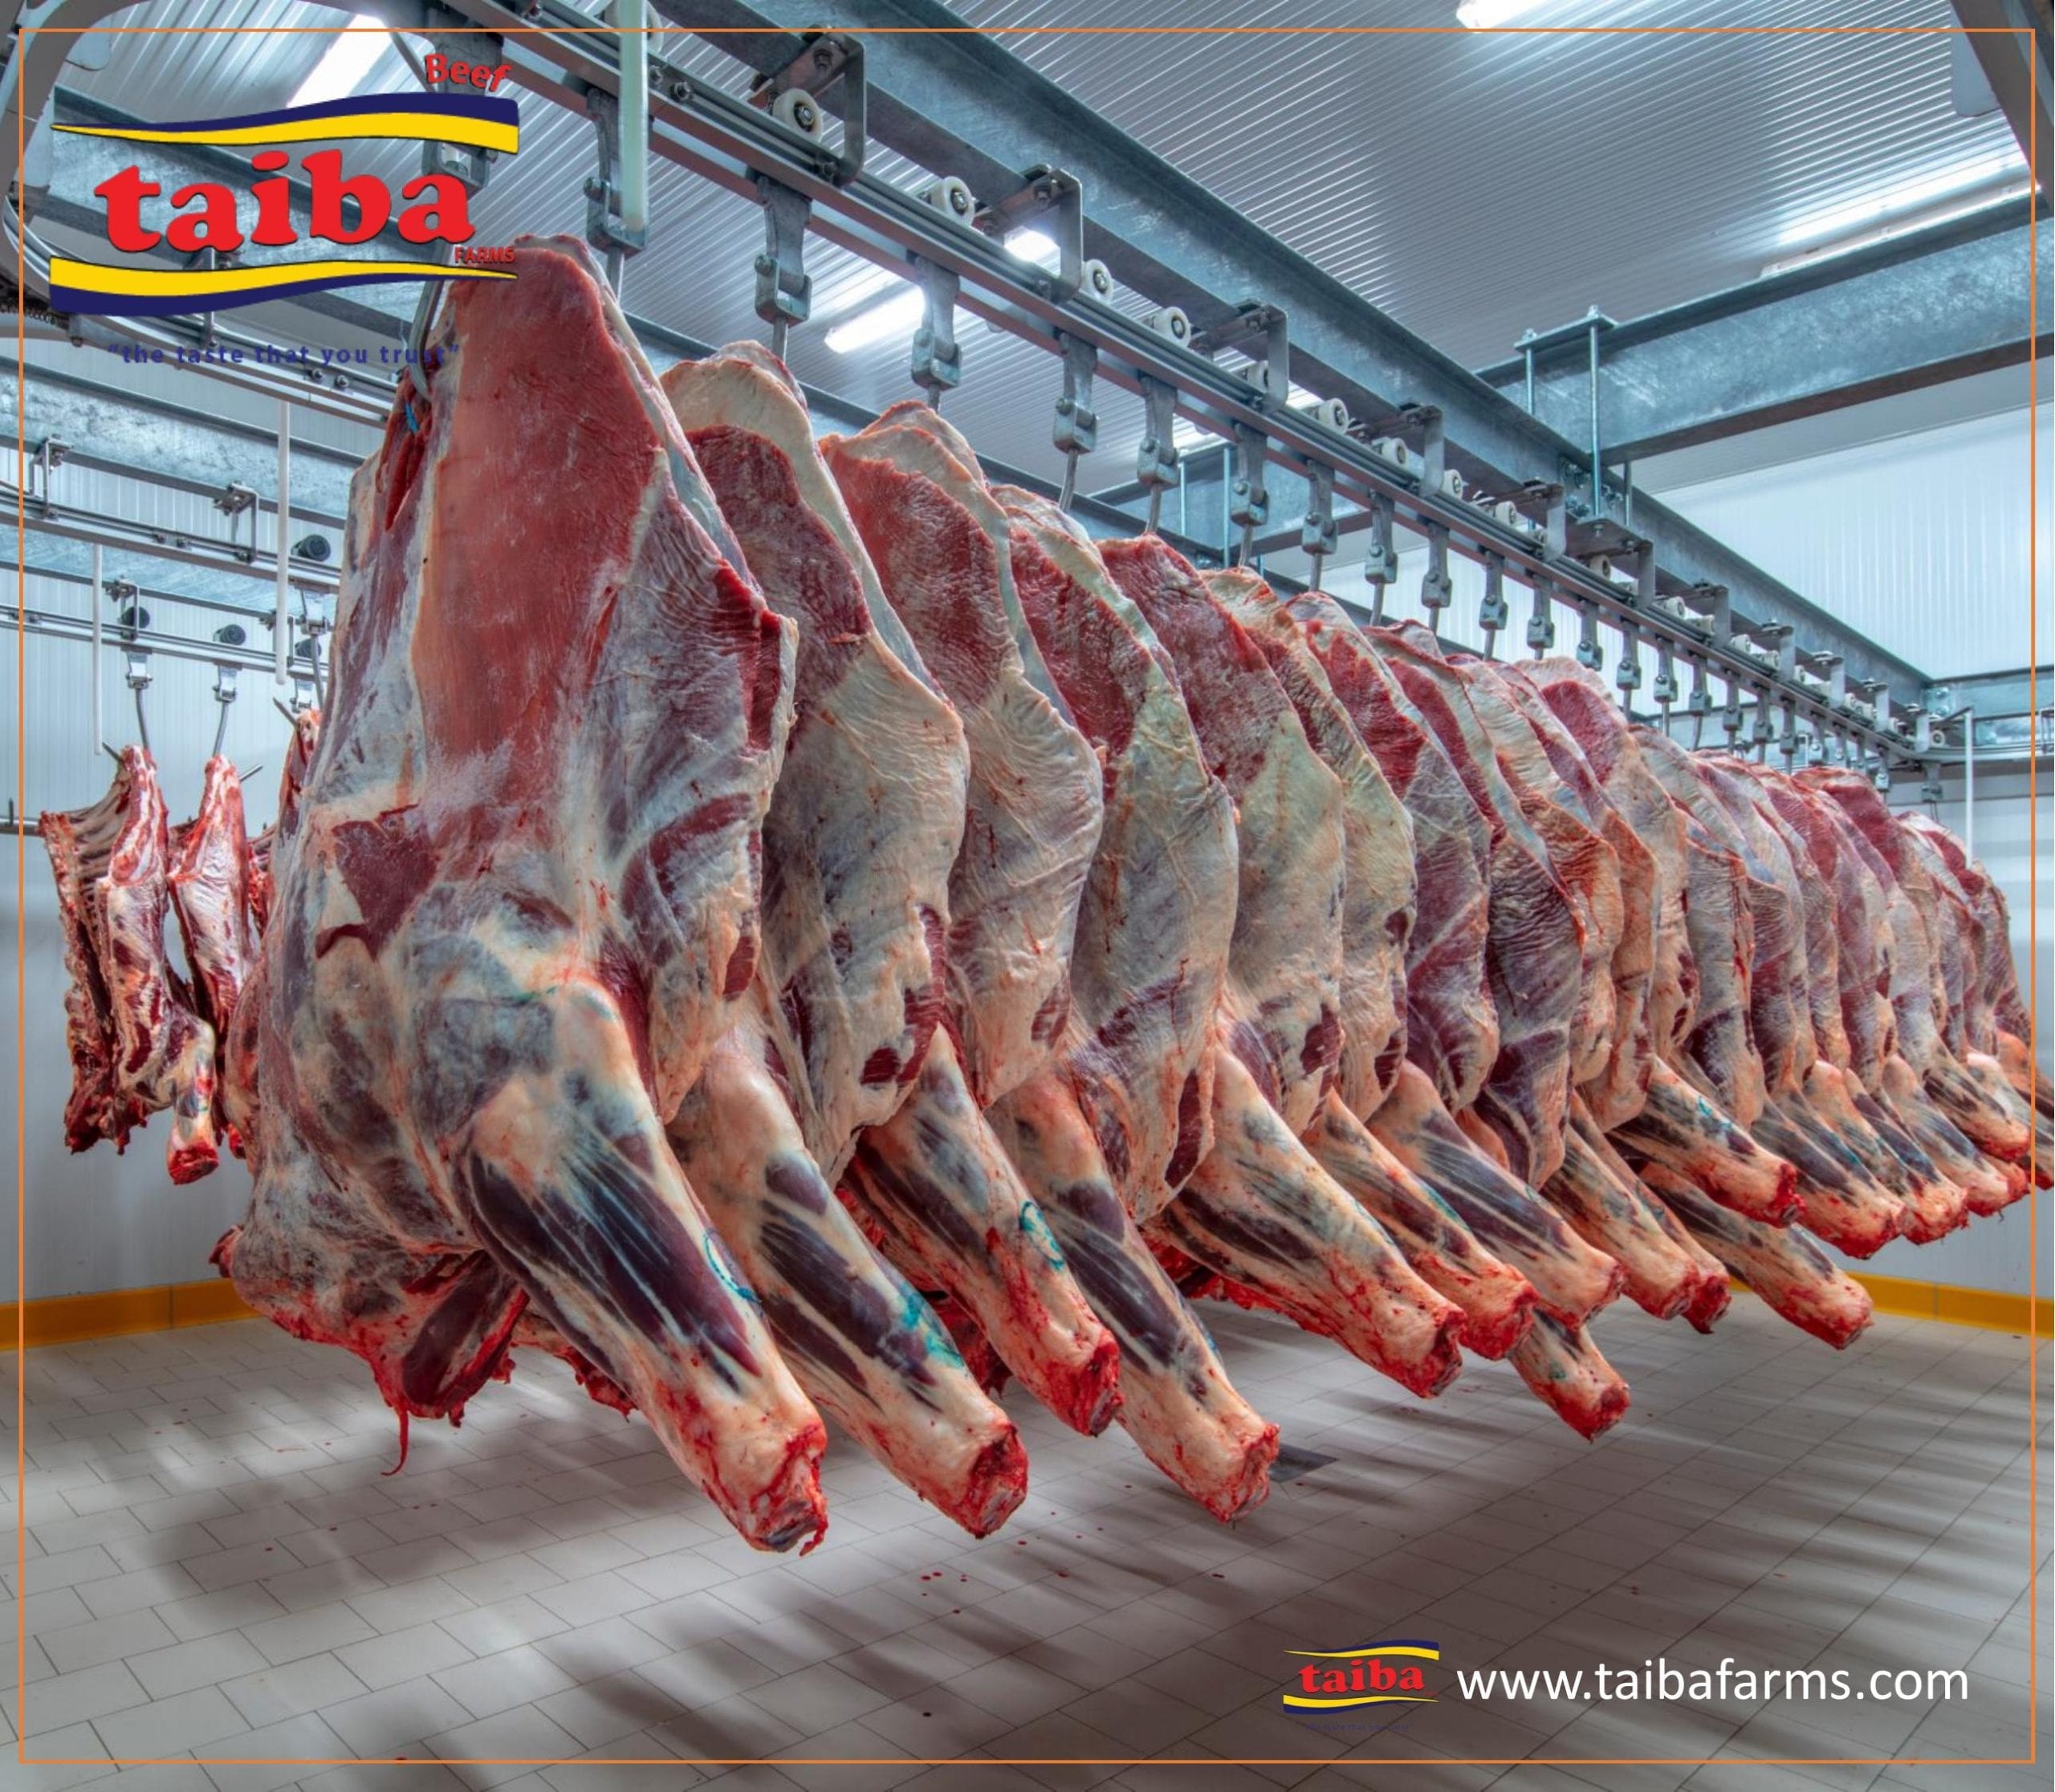 冷藏肉类 在中国、冰鲜肉类、网上批发肉类, 批发肉类分销商, 批发牛在中国 肉, 牛肉进口商, 牛肉出口商, 在中国